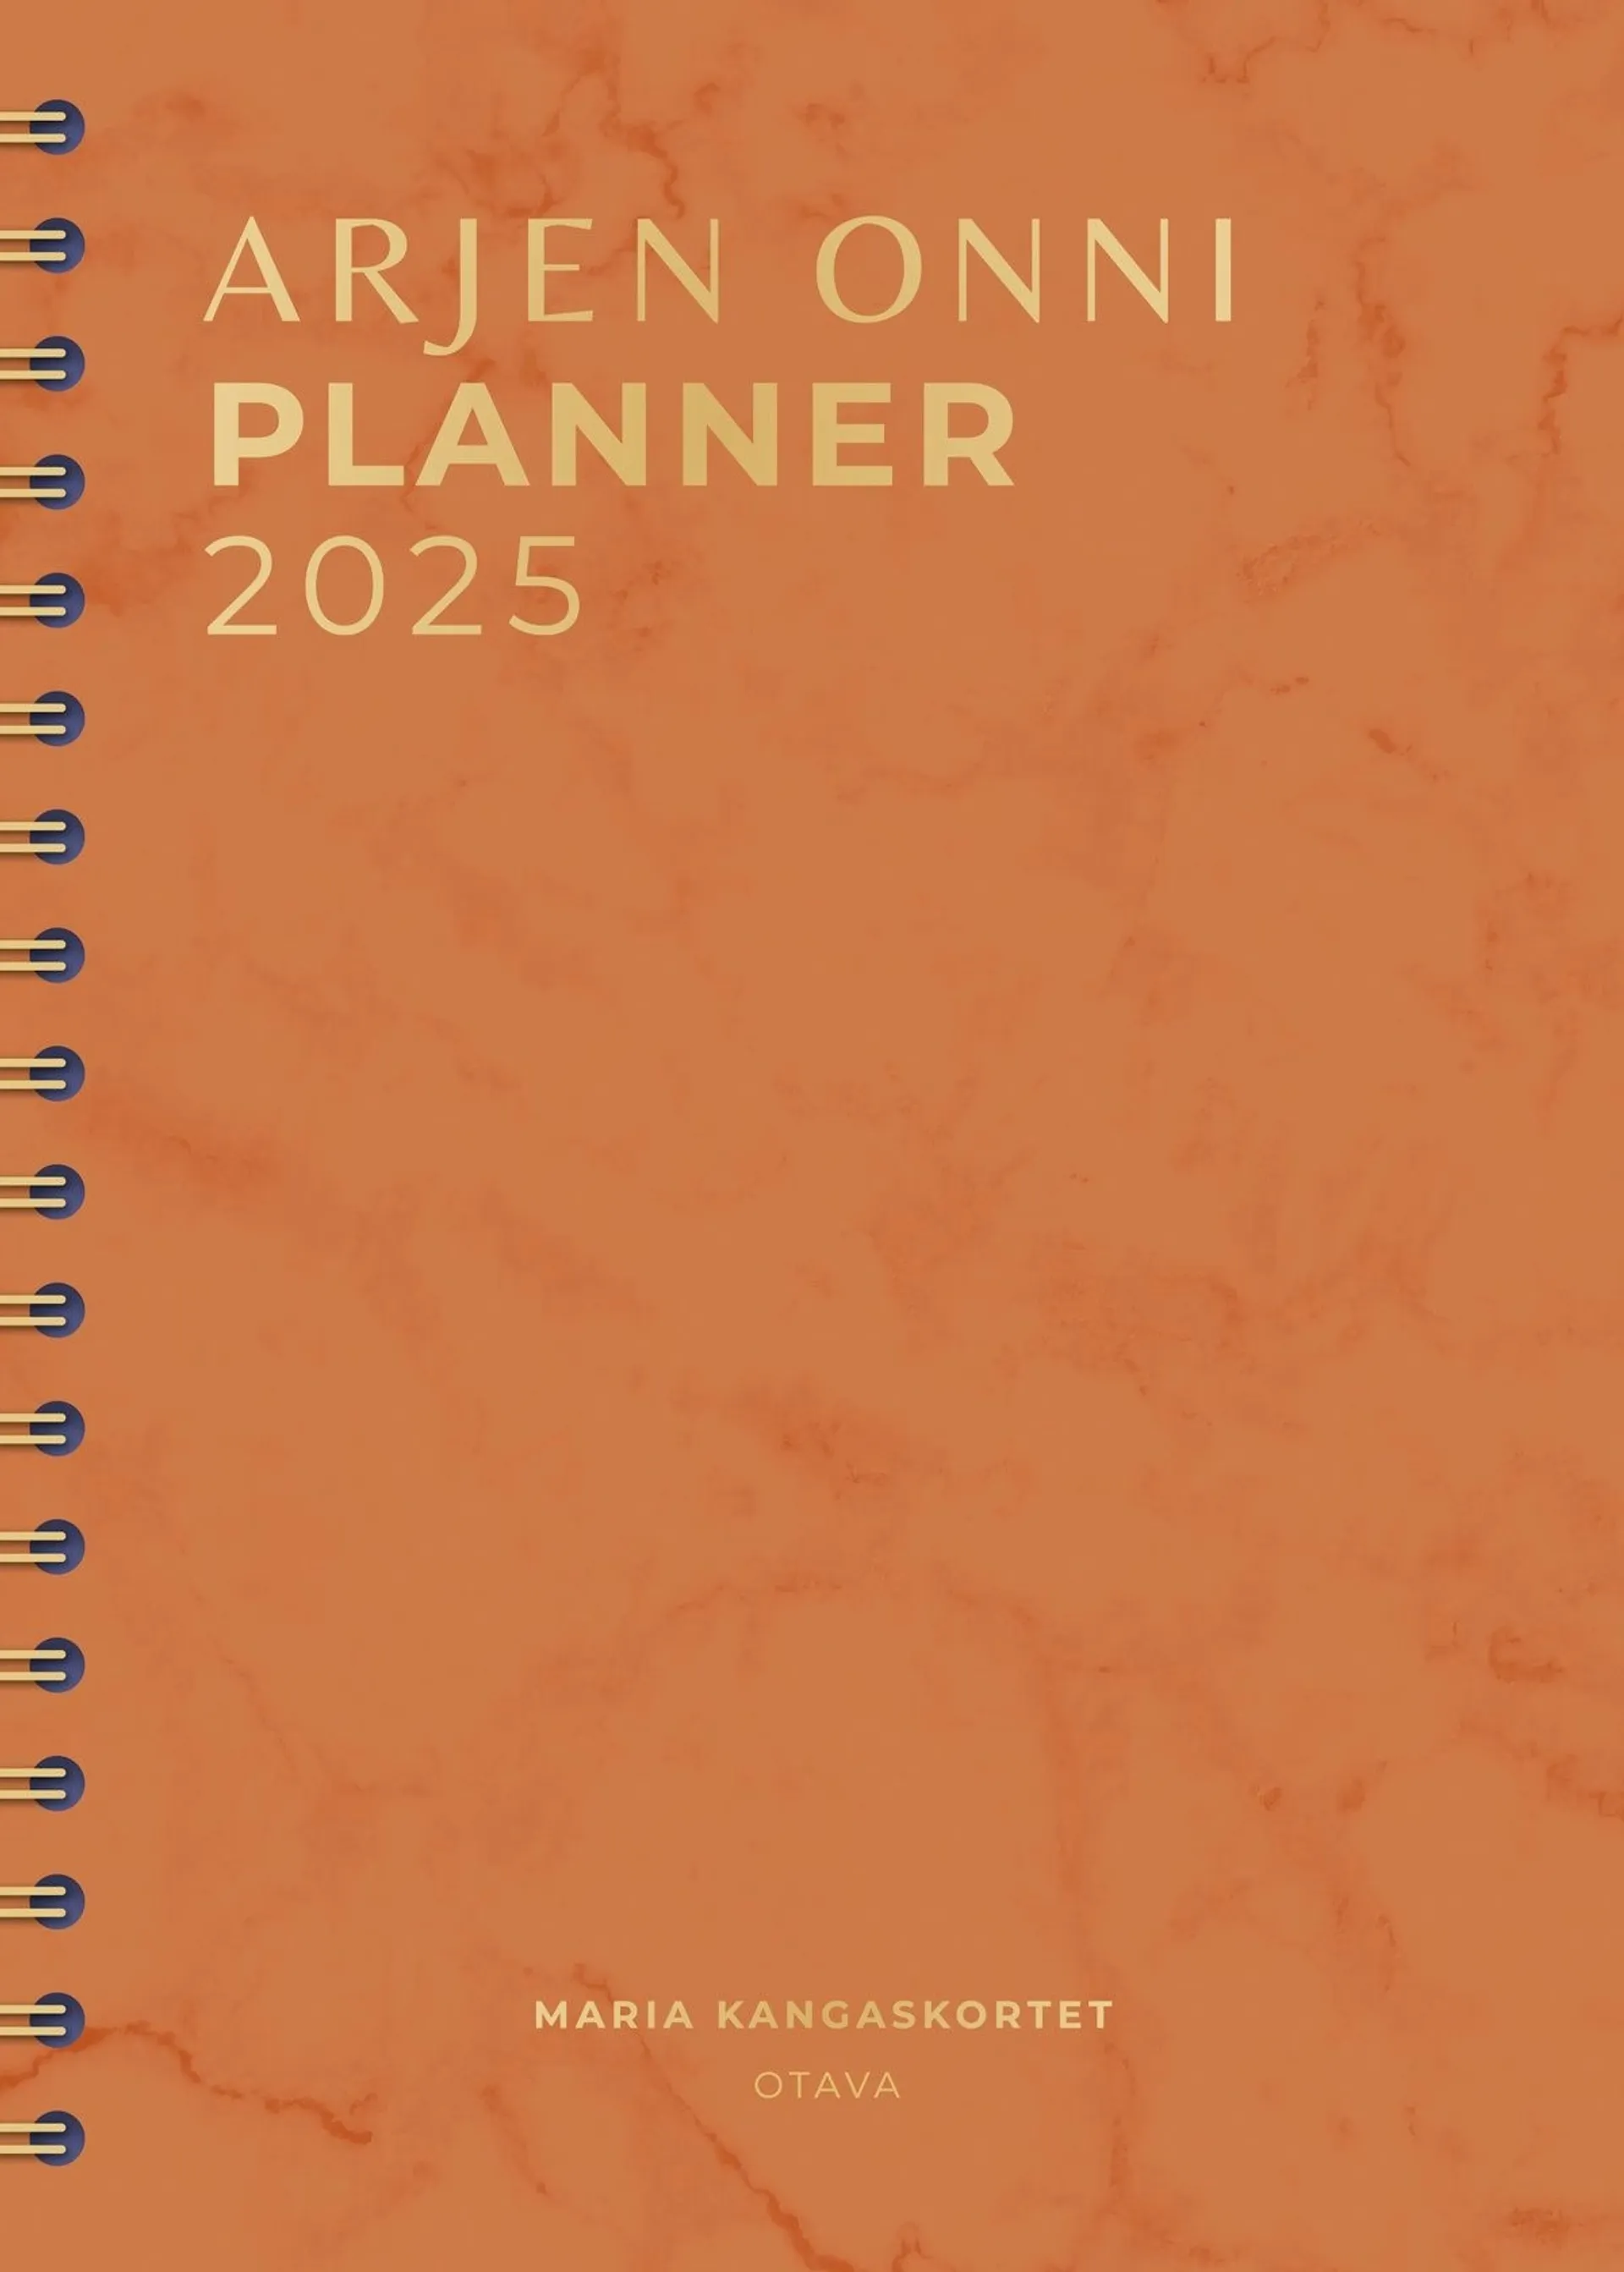 Kangaskortet, Arjen onni Planner 2025